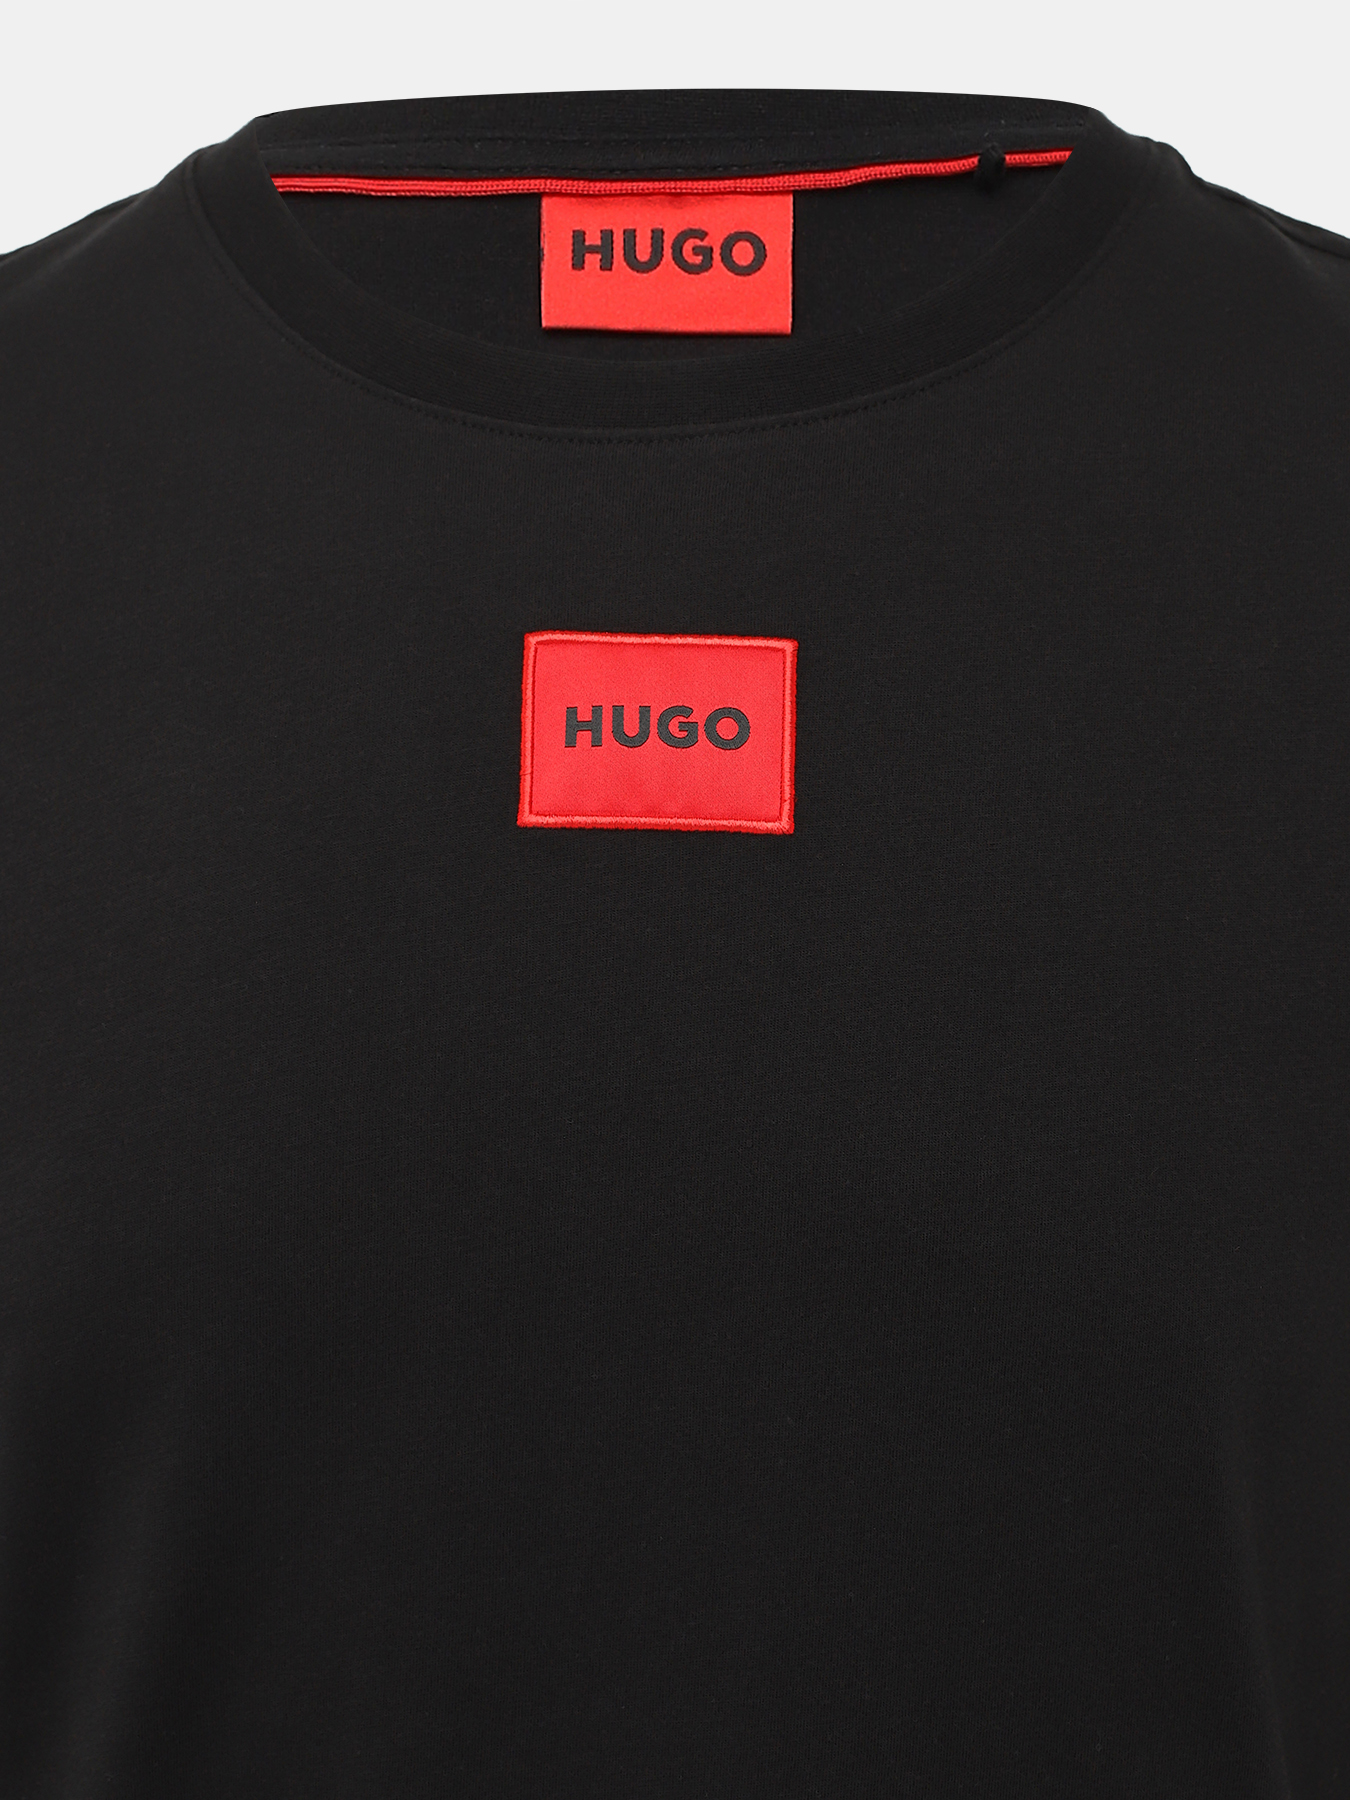 Лонгслив Diragolo HUGO 438651-042, цвет черный, размер 46-48 - фото 2